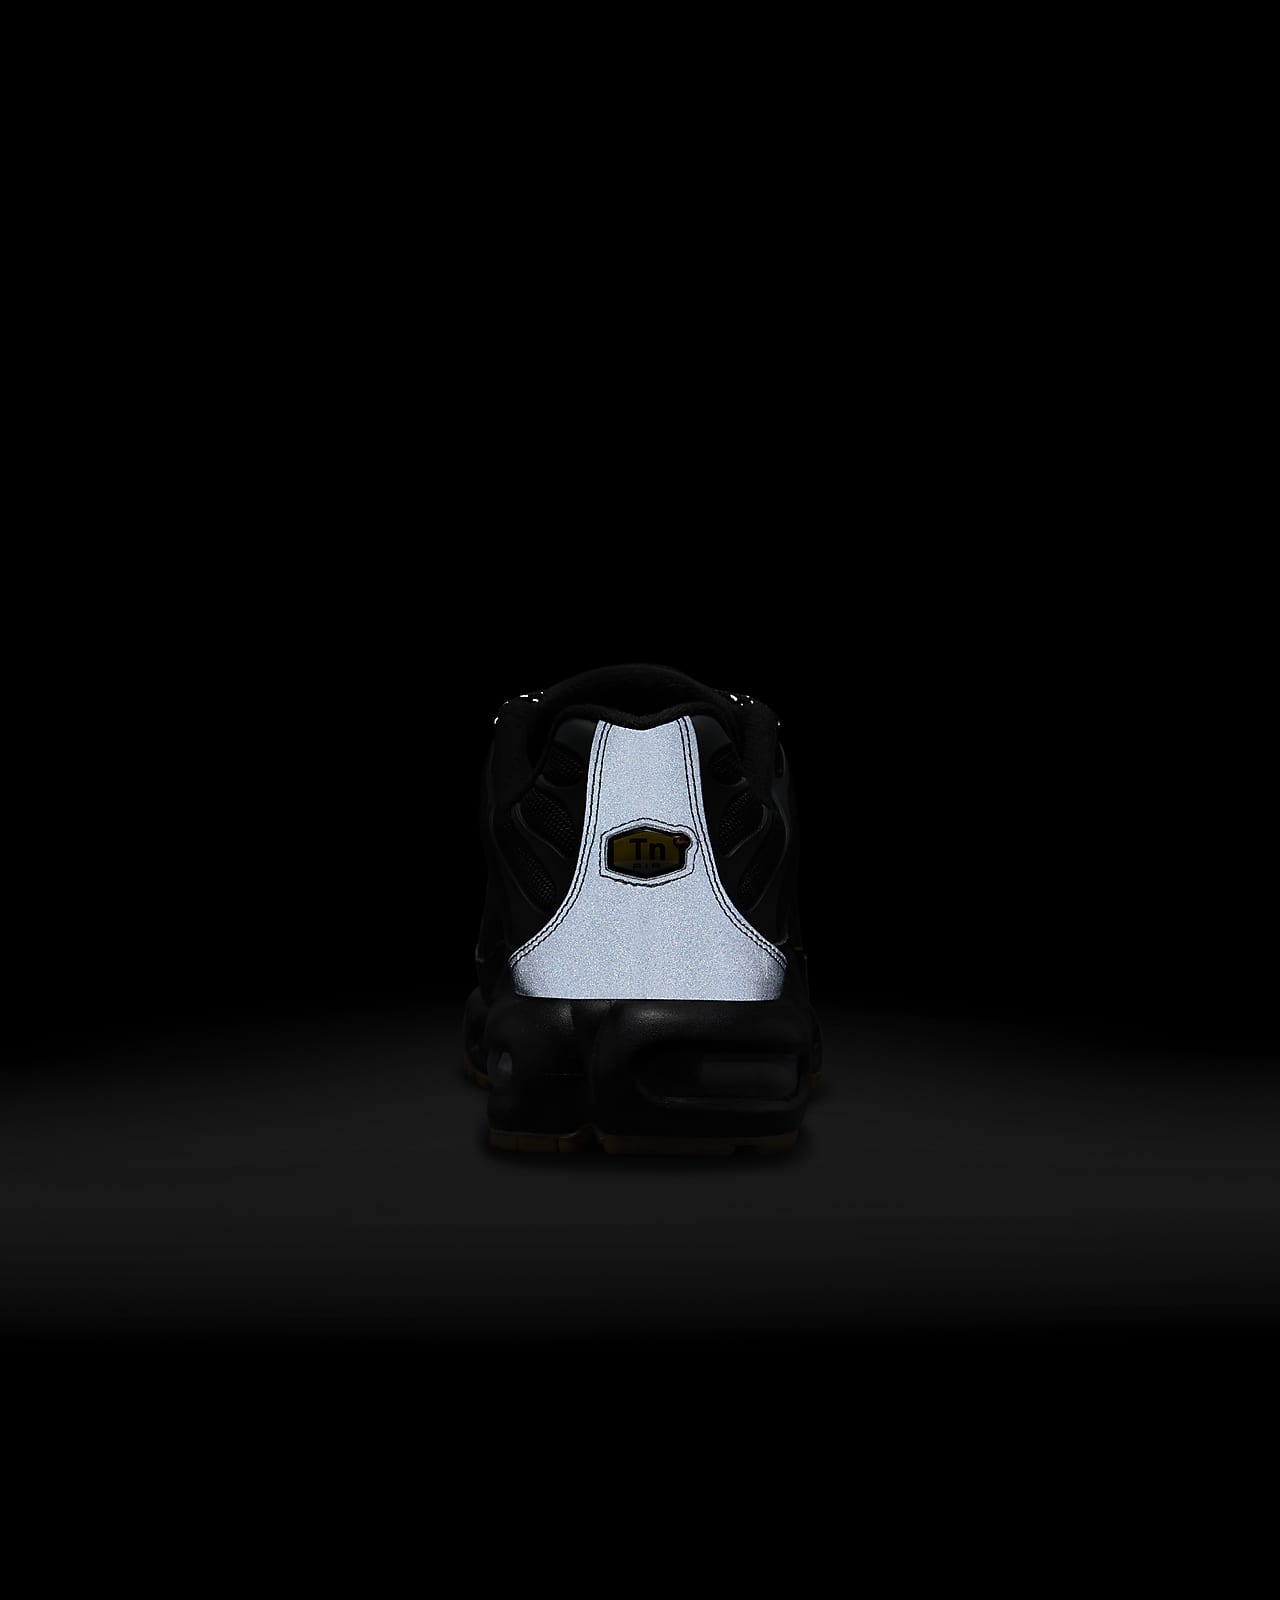 Nike-Air Max Plus Tn Homme Chaussures De Course Confortables Originales  Encounaker observateur AJ4114-001 Noir